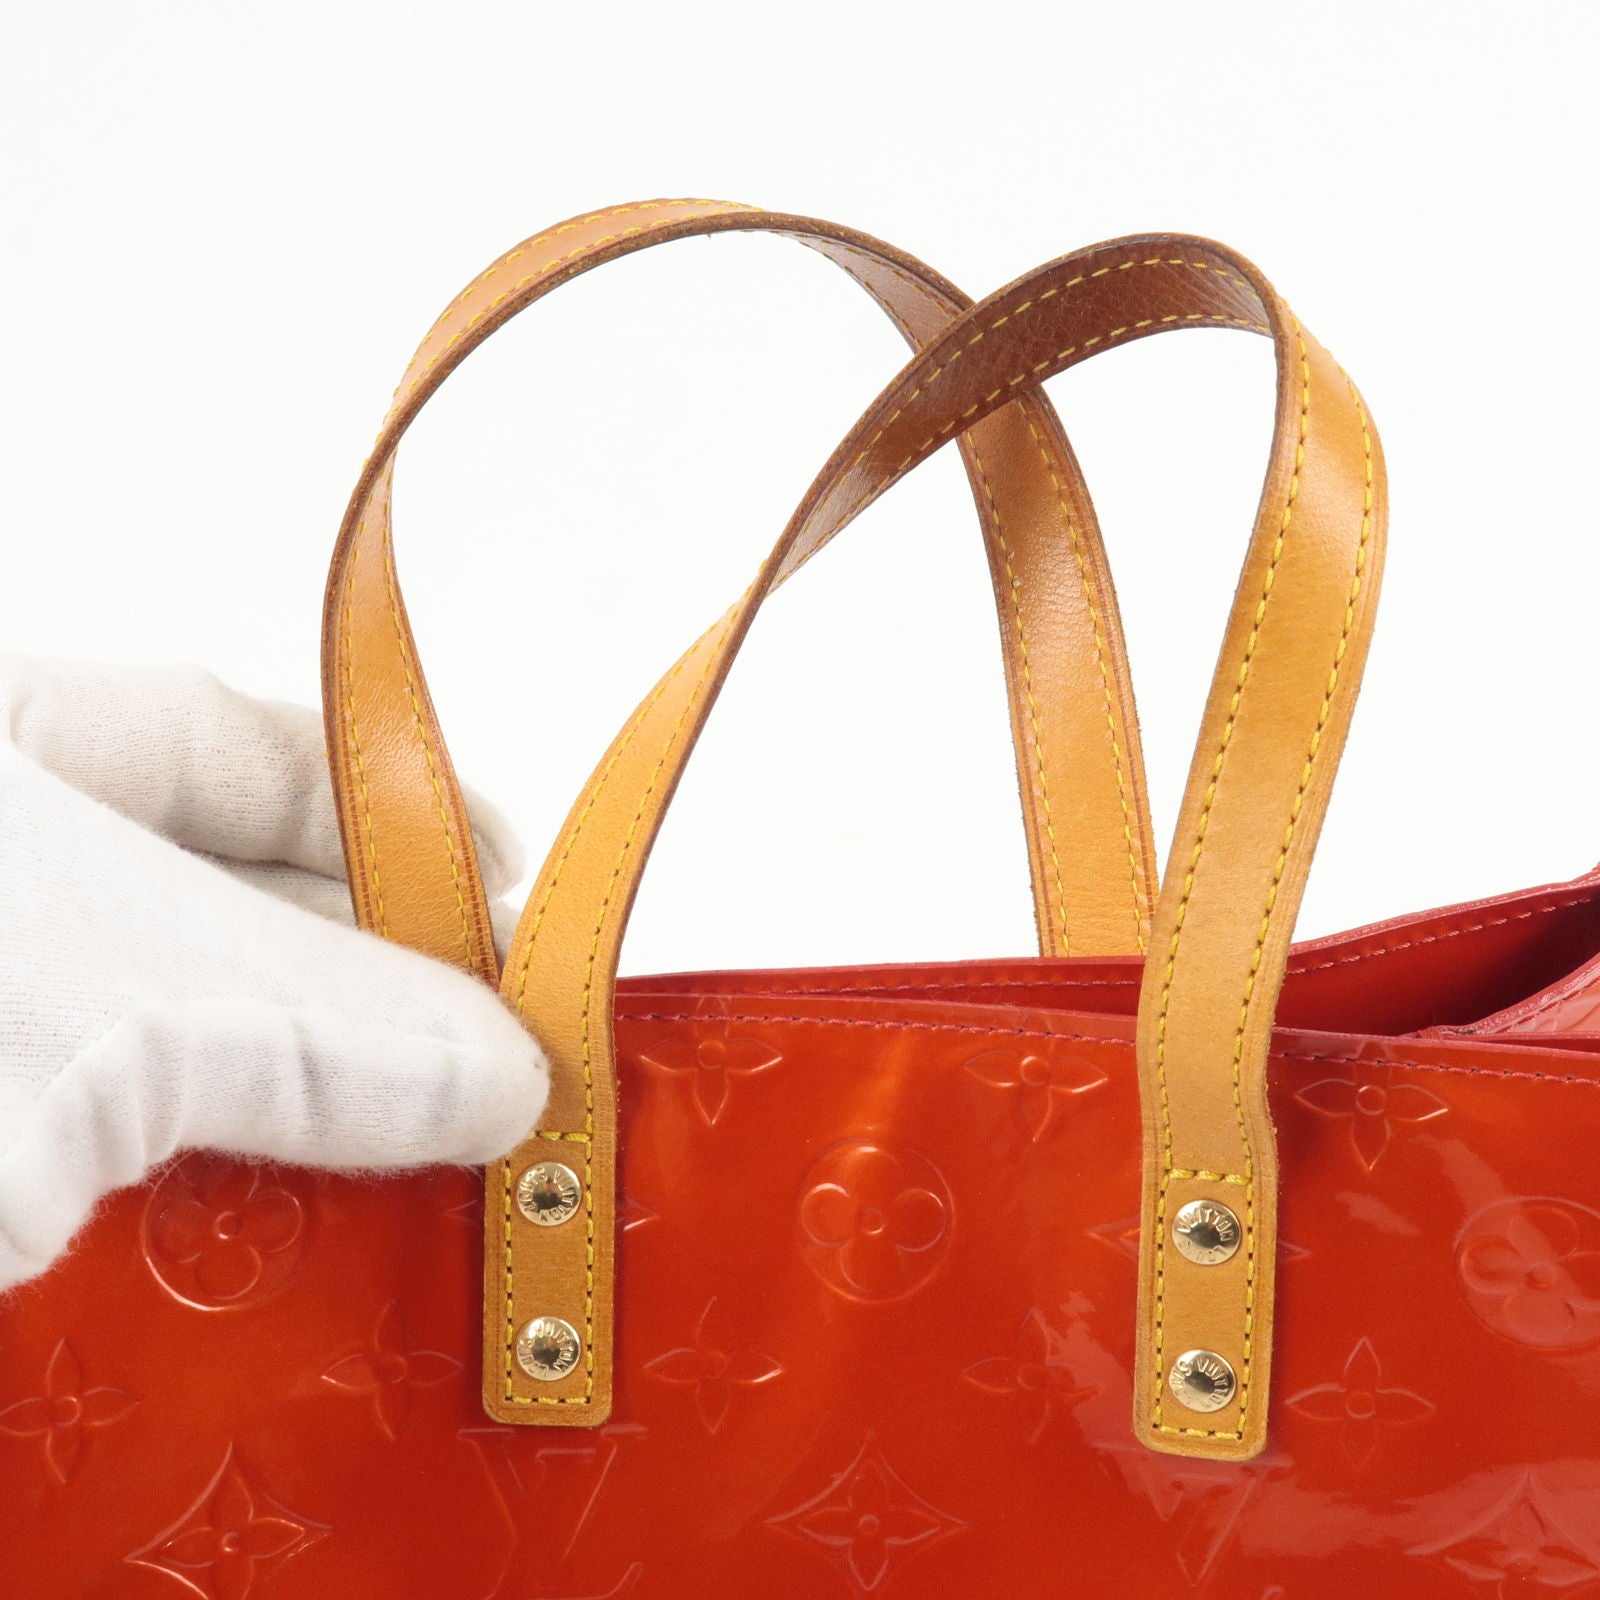 Louis-Vuitton-Monogram-Vernis-Lead-PM-Hand-Bag-Rouge-M91088 – dct